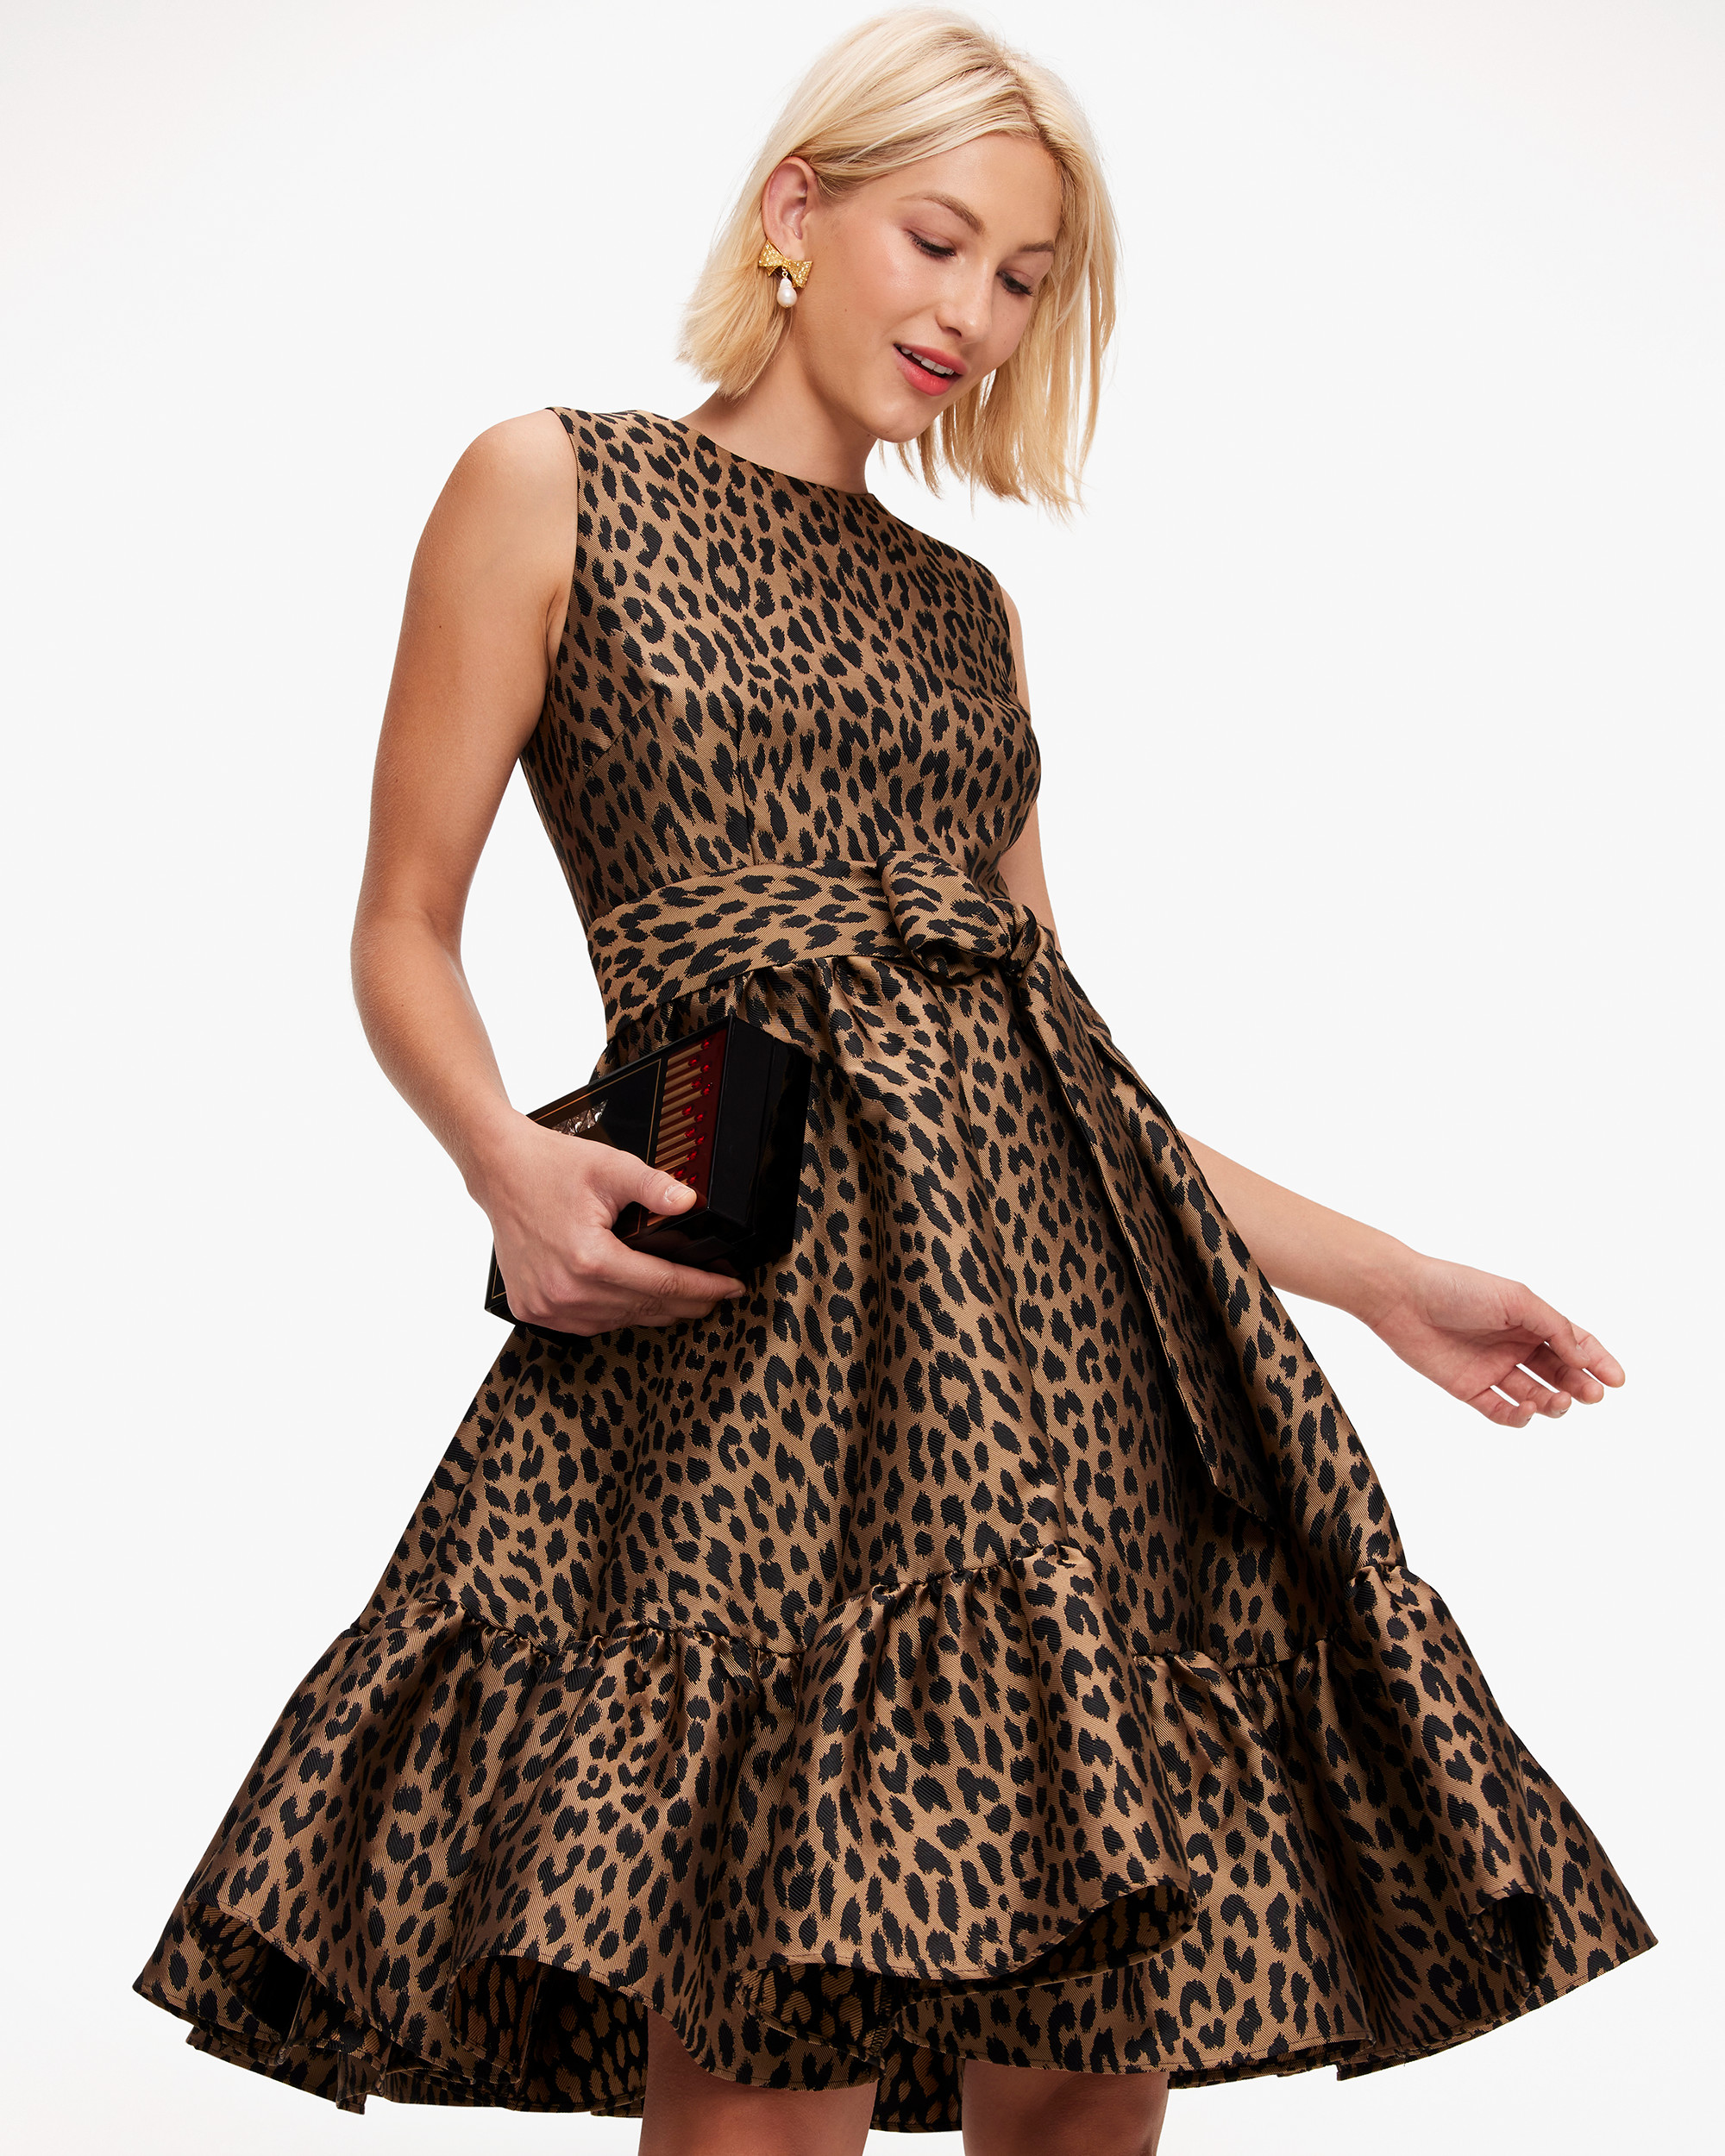 Kate Spade Modern Leopard Brocade Dress